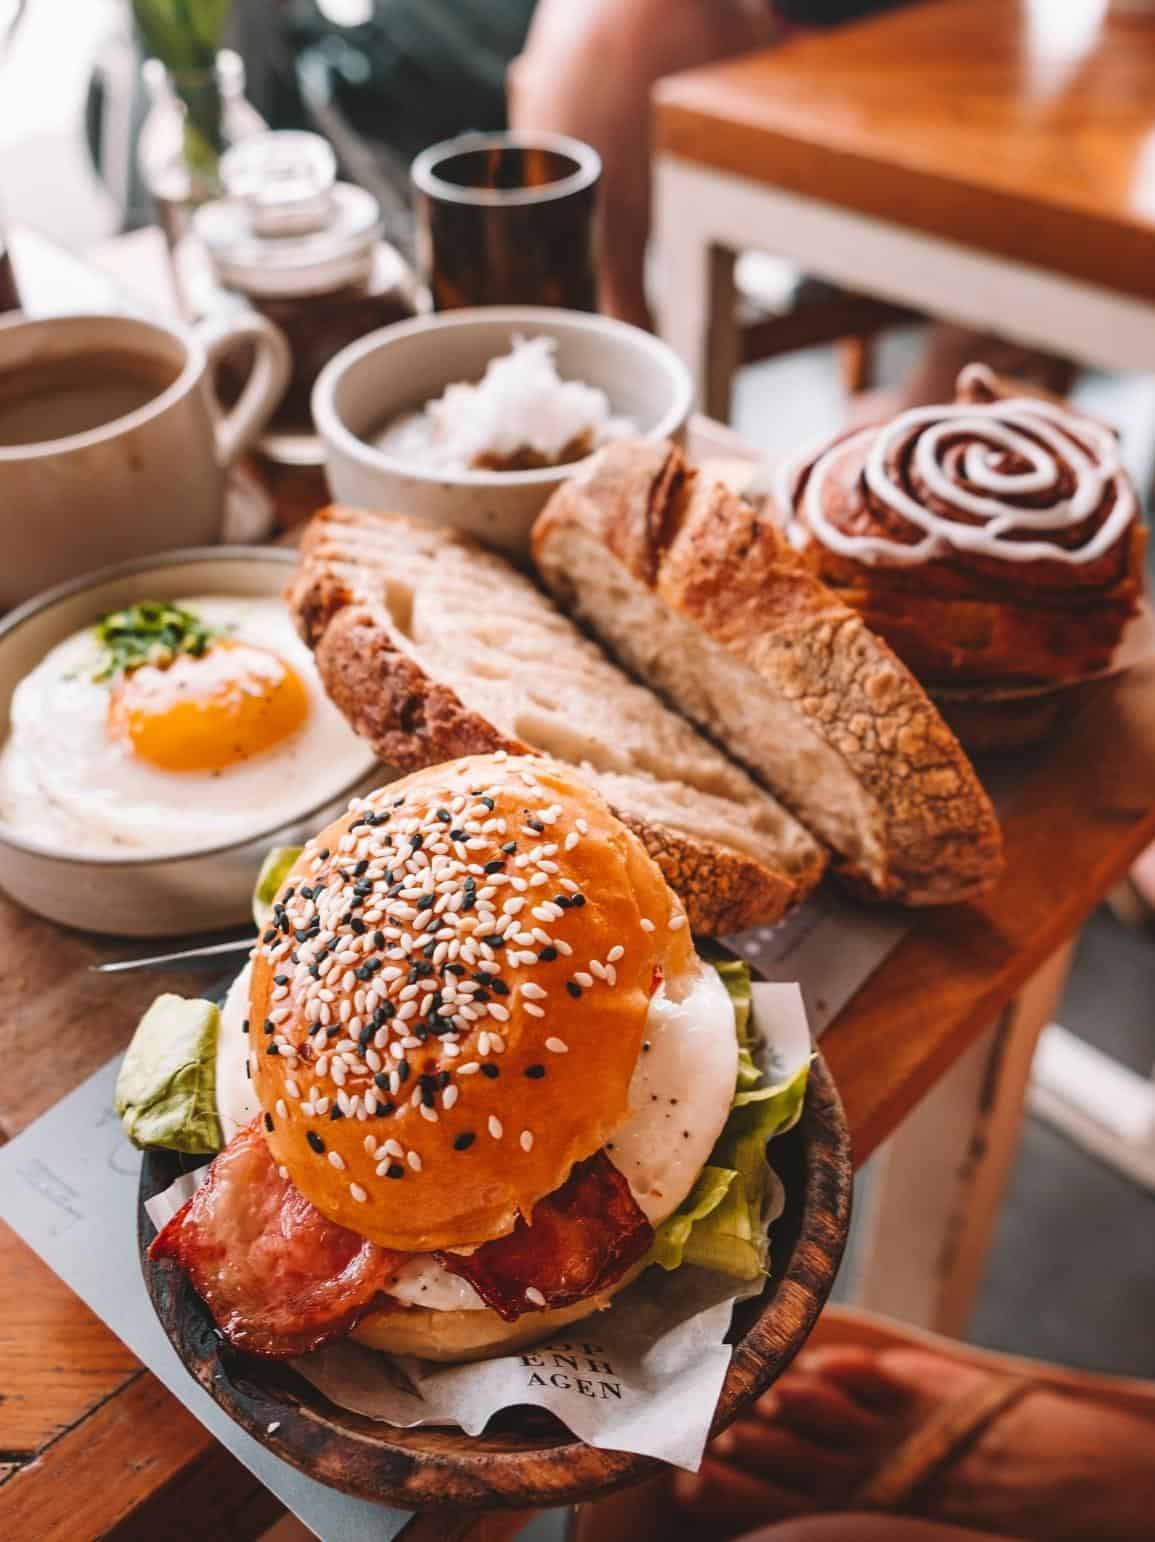 A breakfast sandwich, eggs and toast from Copenhagen in Canggu Bali